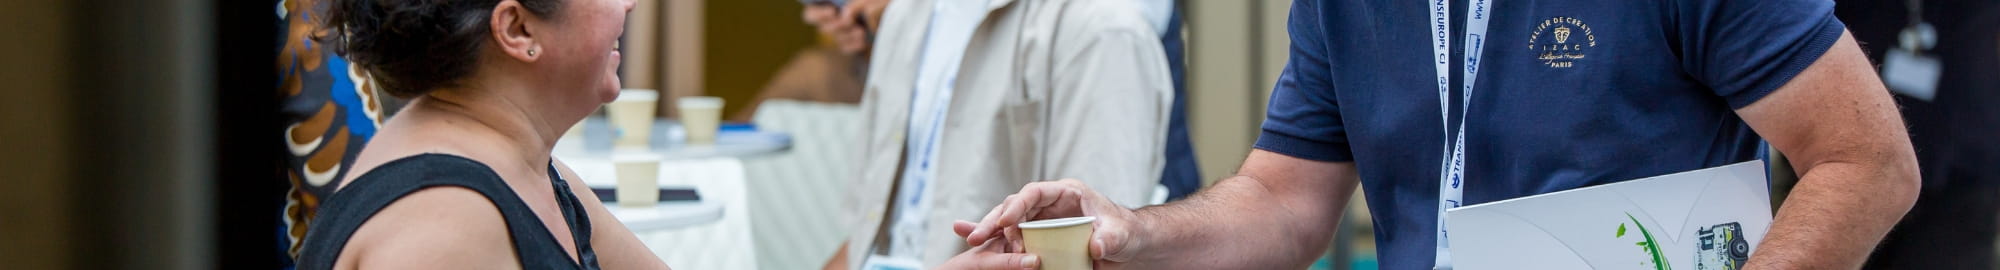 Personnes souriantes qui échangent, se donnent un café à la pause café parmi les stands de top logistics europe